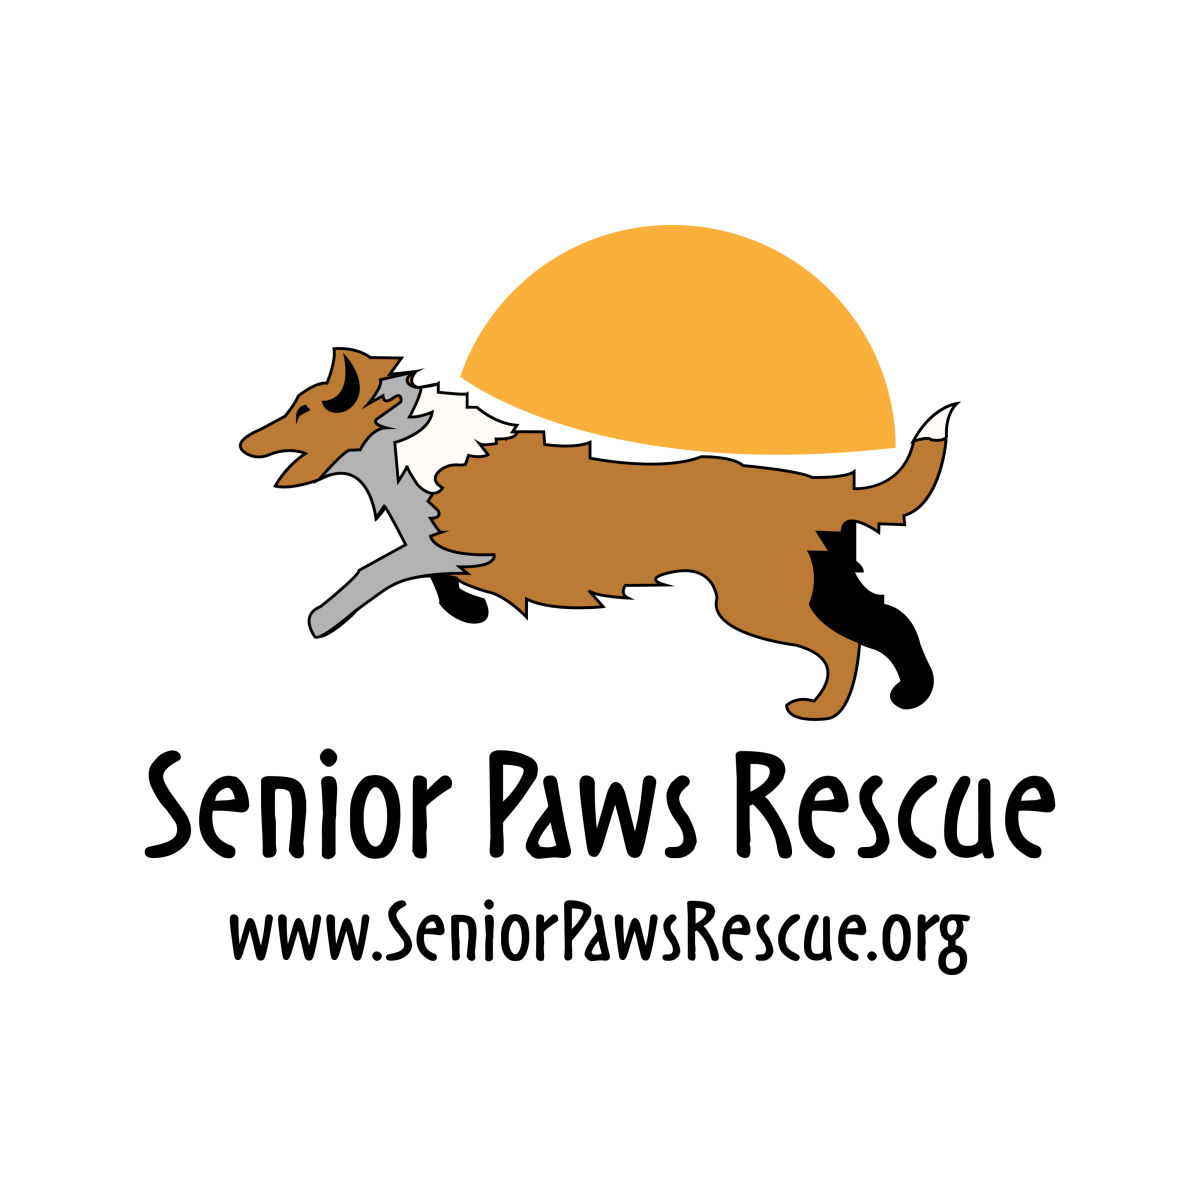 Senior Paws Rescue